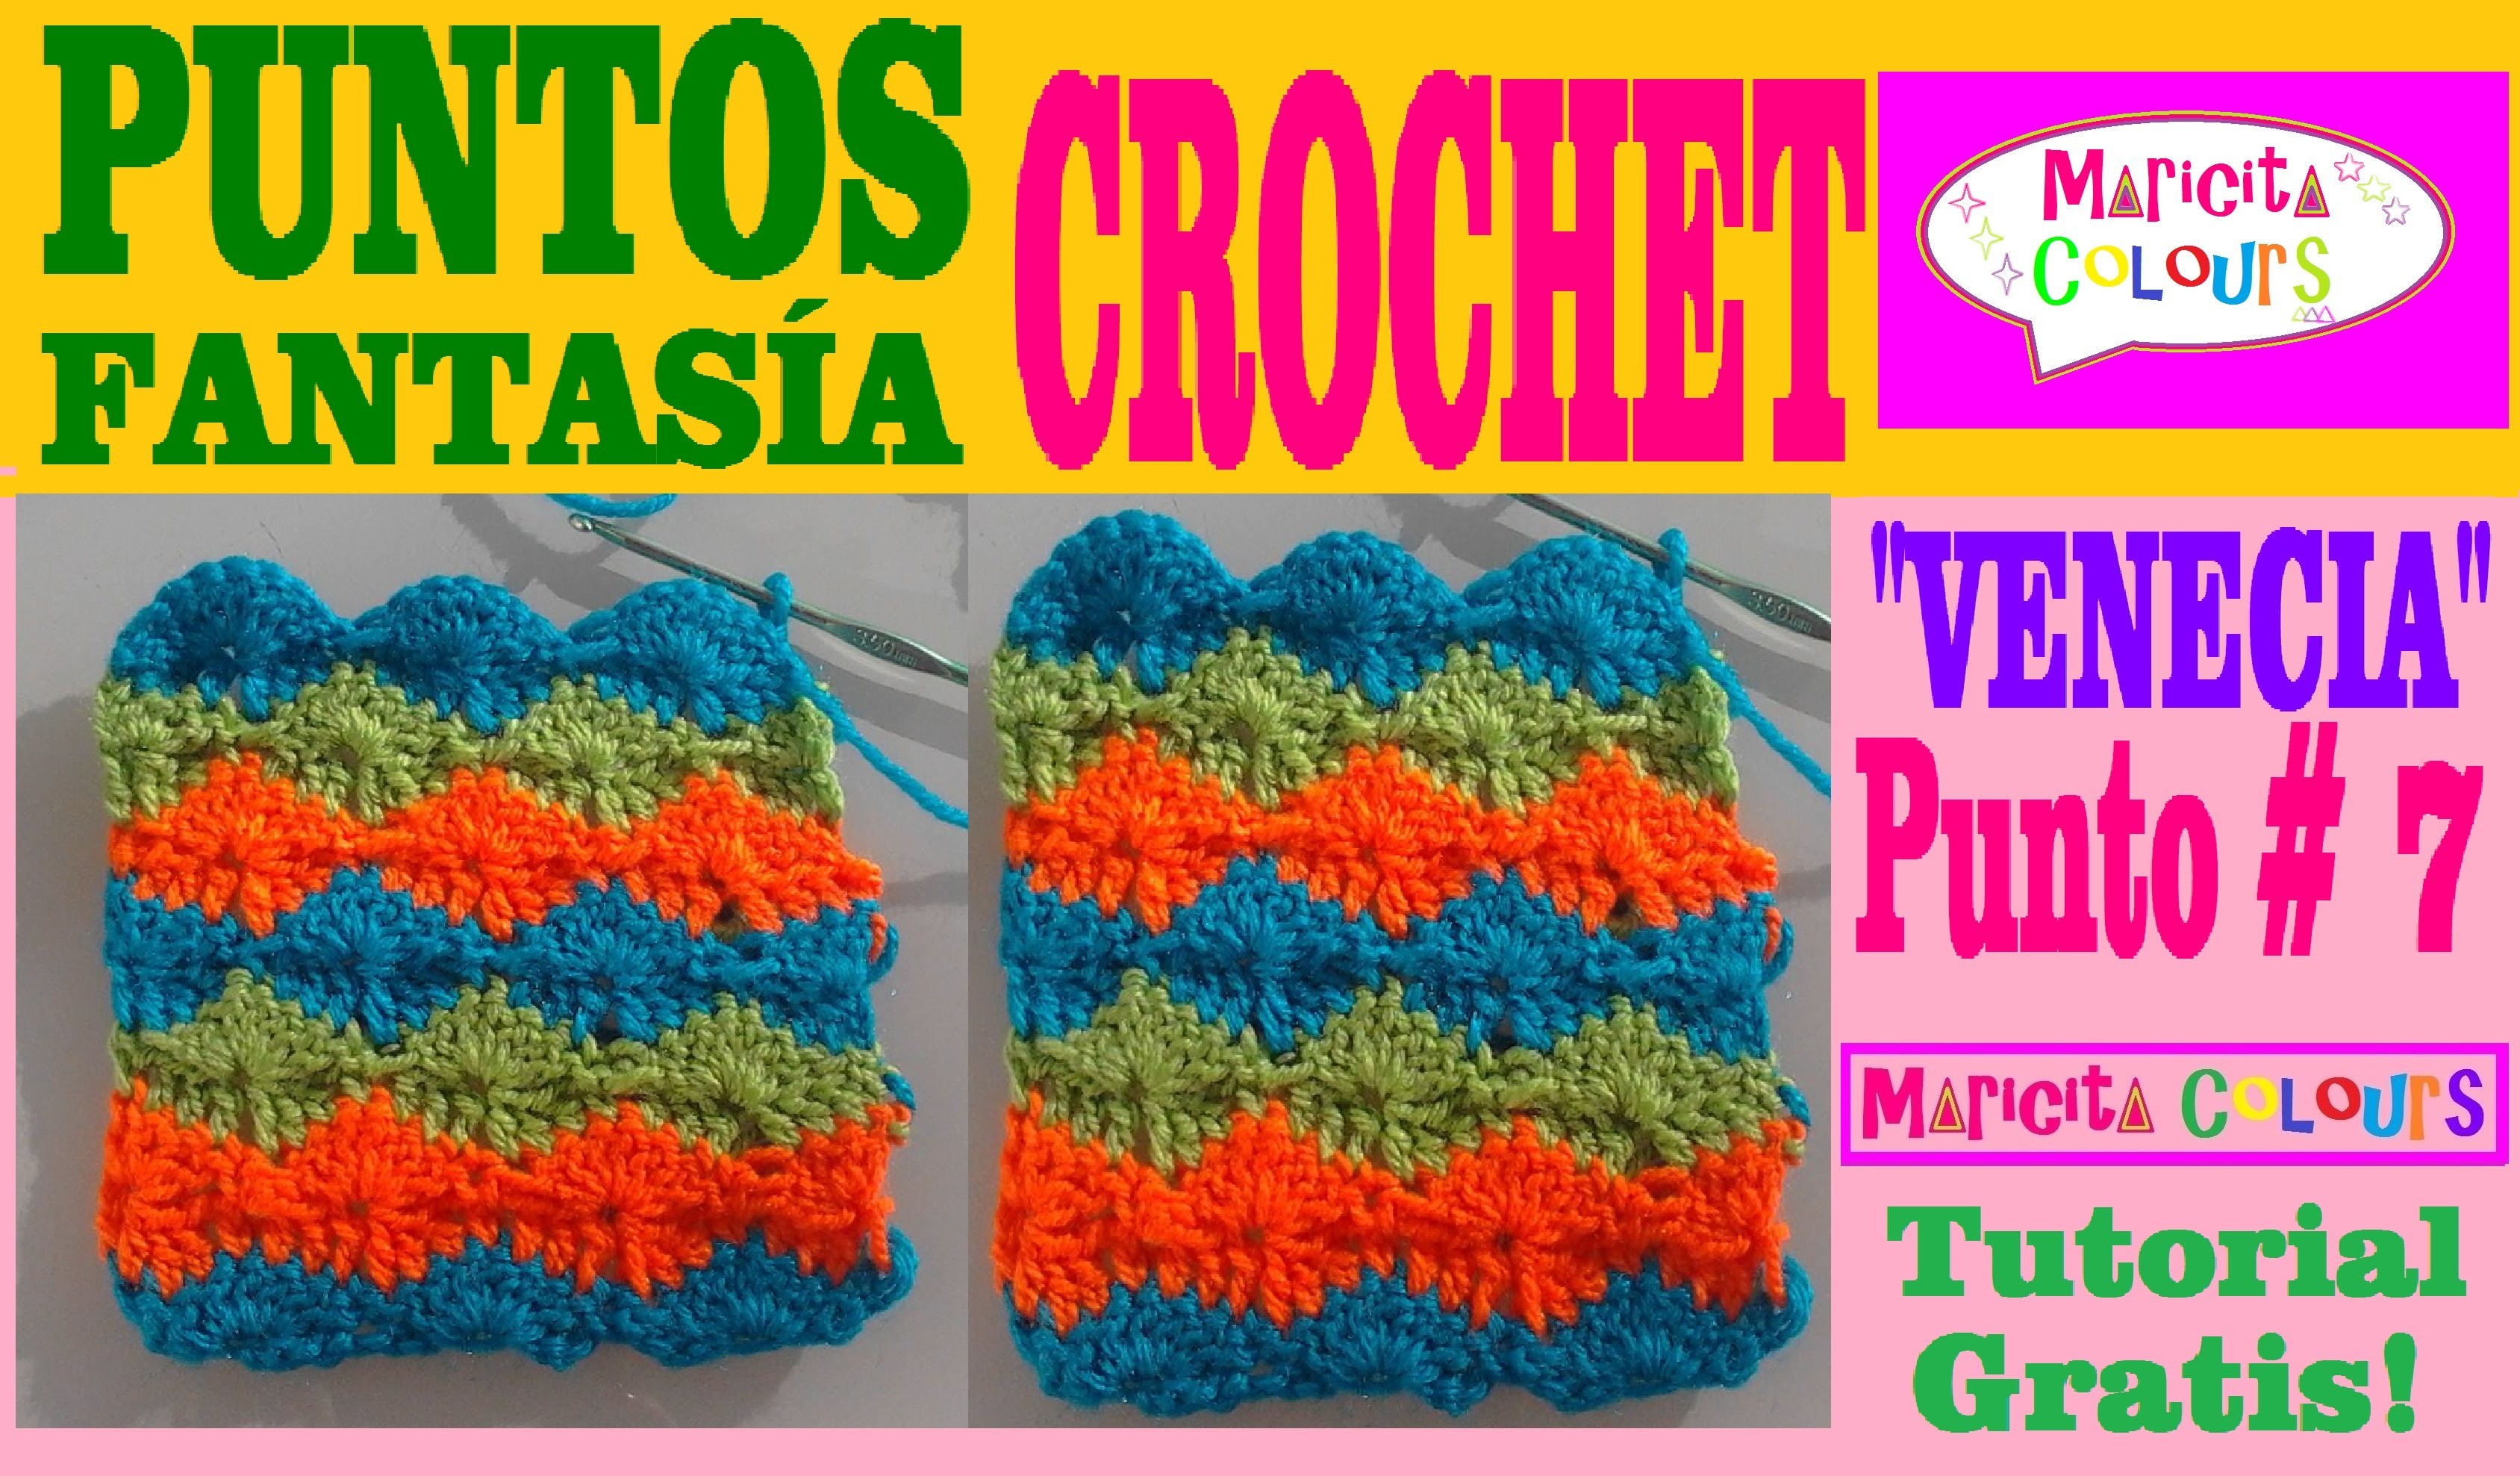 Punto Fantasía # 7 Tutorial Crochet "Venecia" (Parte 1) por Maricita Colours